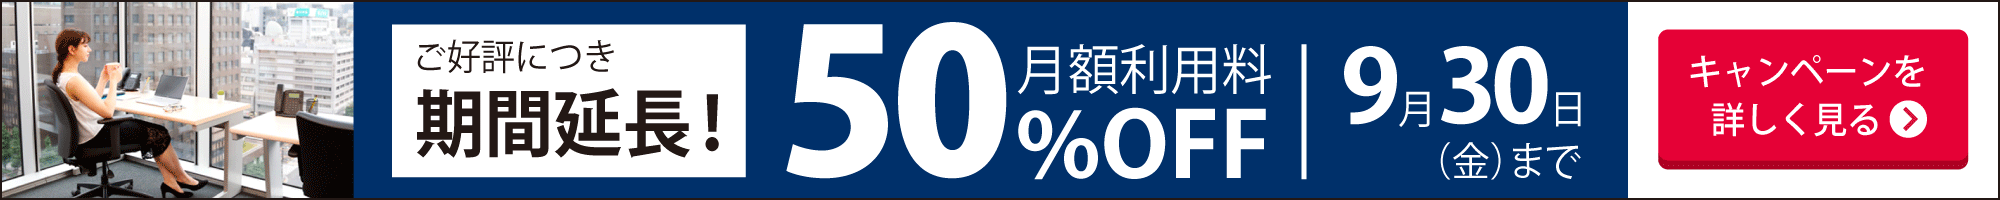 格安料金のレンタルオフィス【オープンオフィス】最長８カ月間月額利用料50%OFFキャンペーン